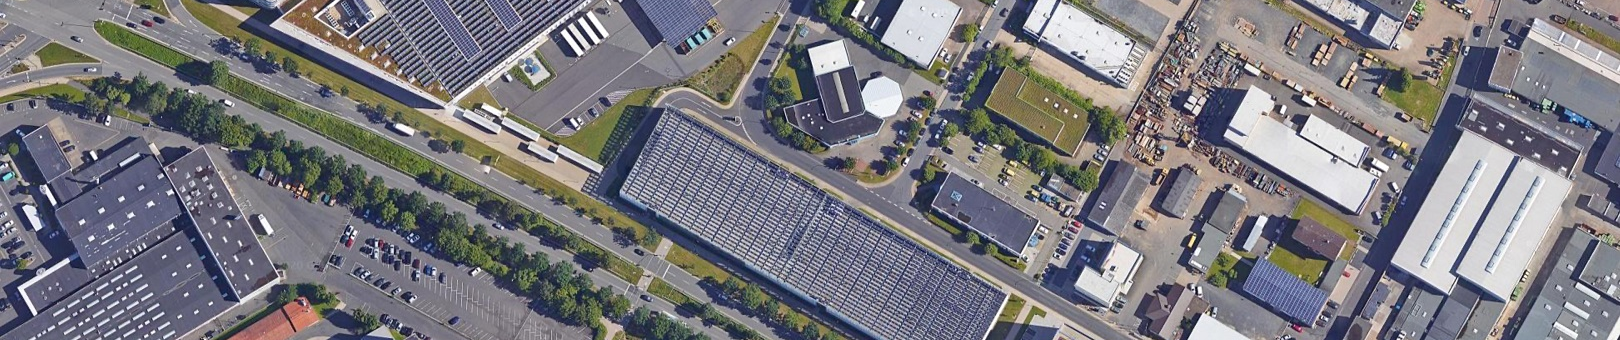 Elektromobilität im Parkhaus und Solarstrom vom Dach